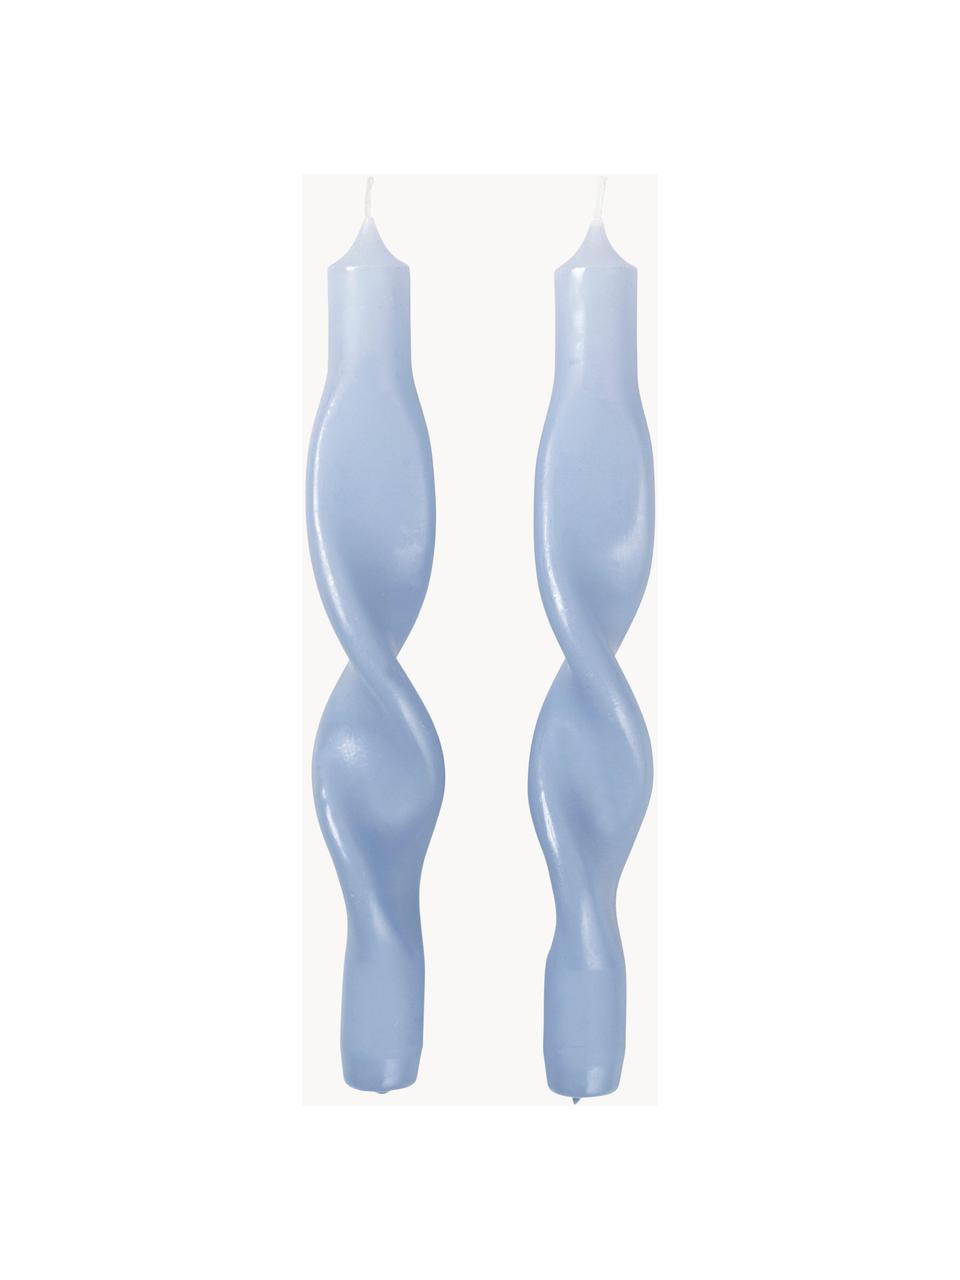 Stolní svíce Twist, 2 ks, Vosk, Světle modrá, bílá, V 23 cm